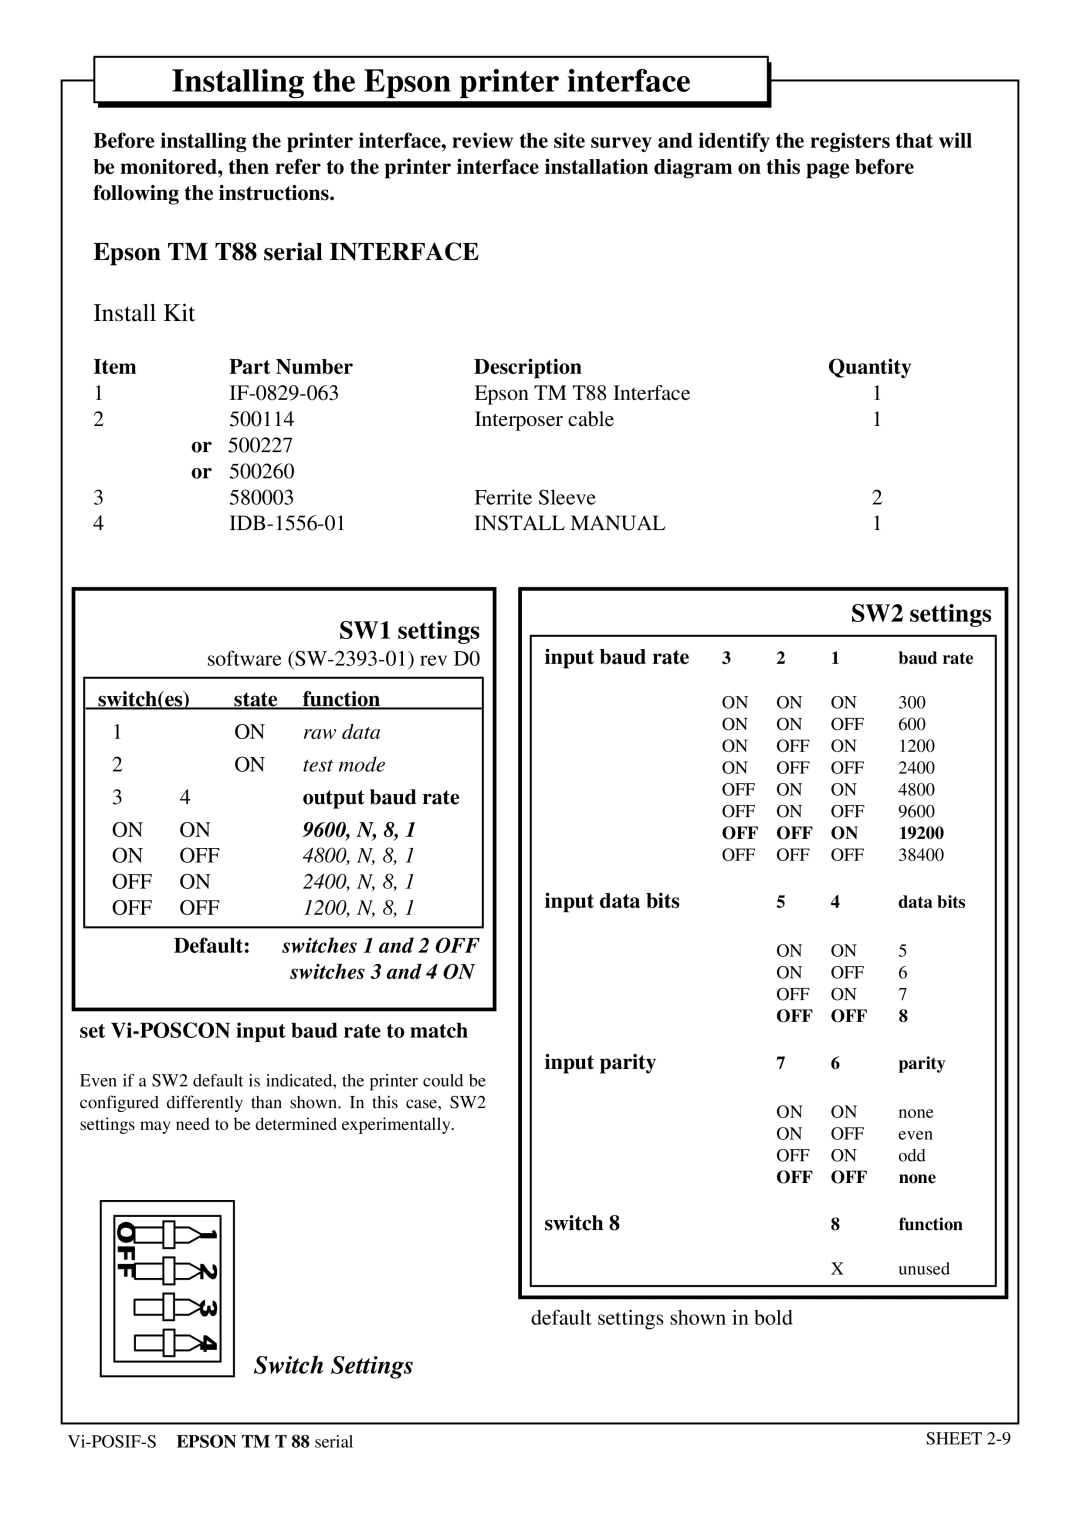 Epson Epson TM T88 serial INTERFACE, SW1 settings, SW2 settings, Installing the Epson printer interface, Install Kit 